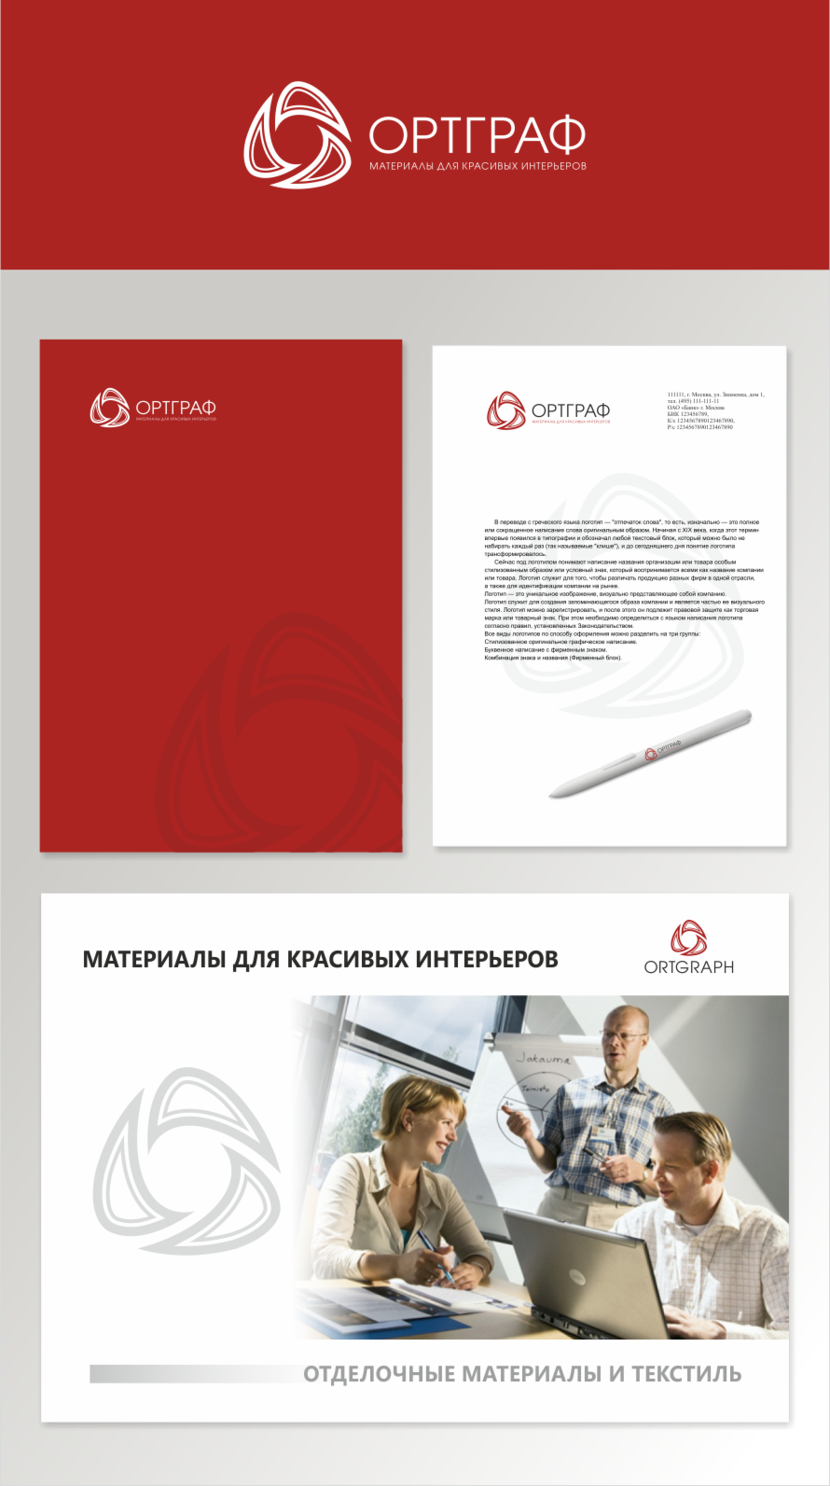 Разработка логотипа и фирменного стиля для компания ОРТГРАФ  -  автор Владимир иии